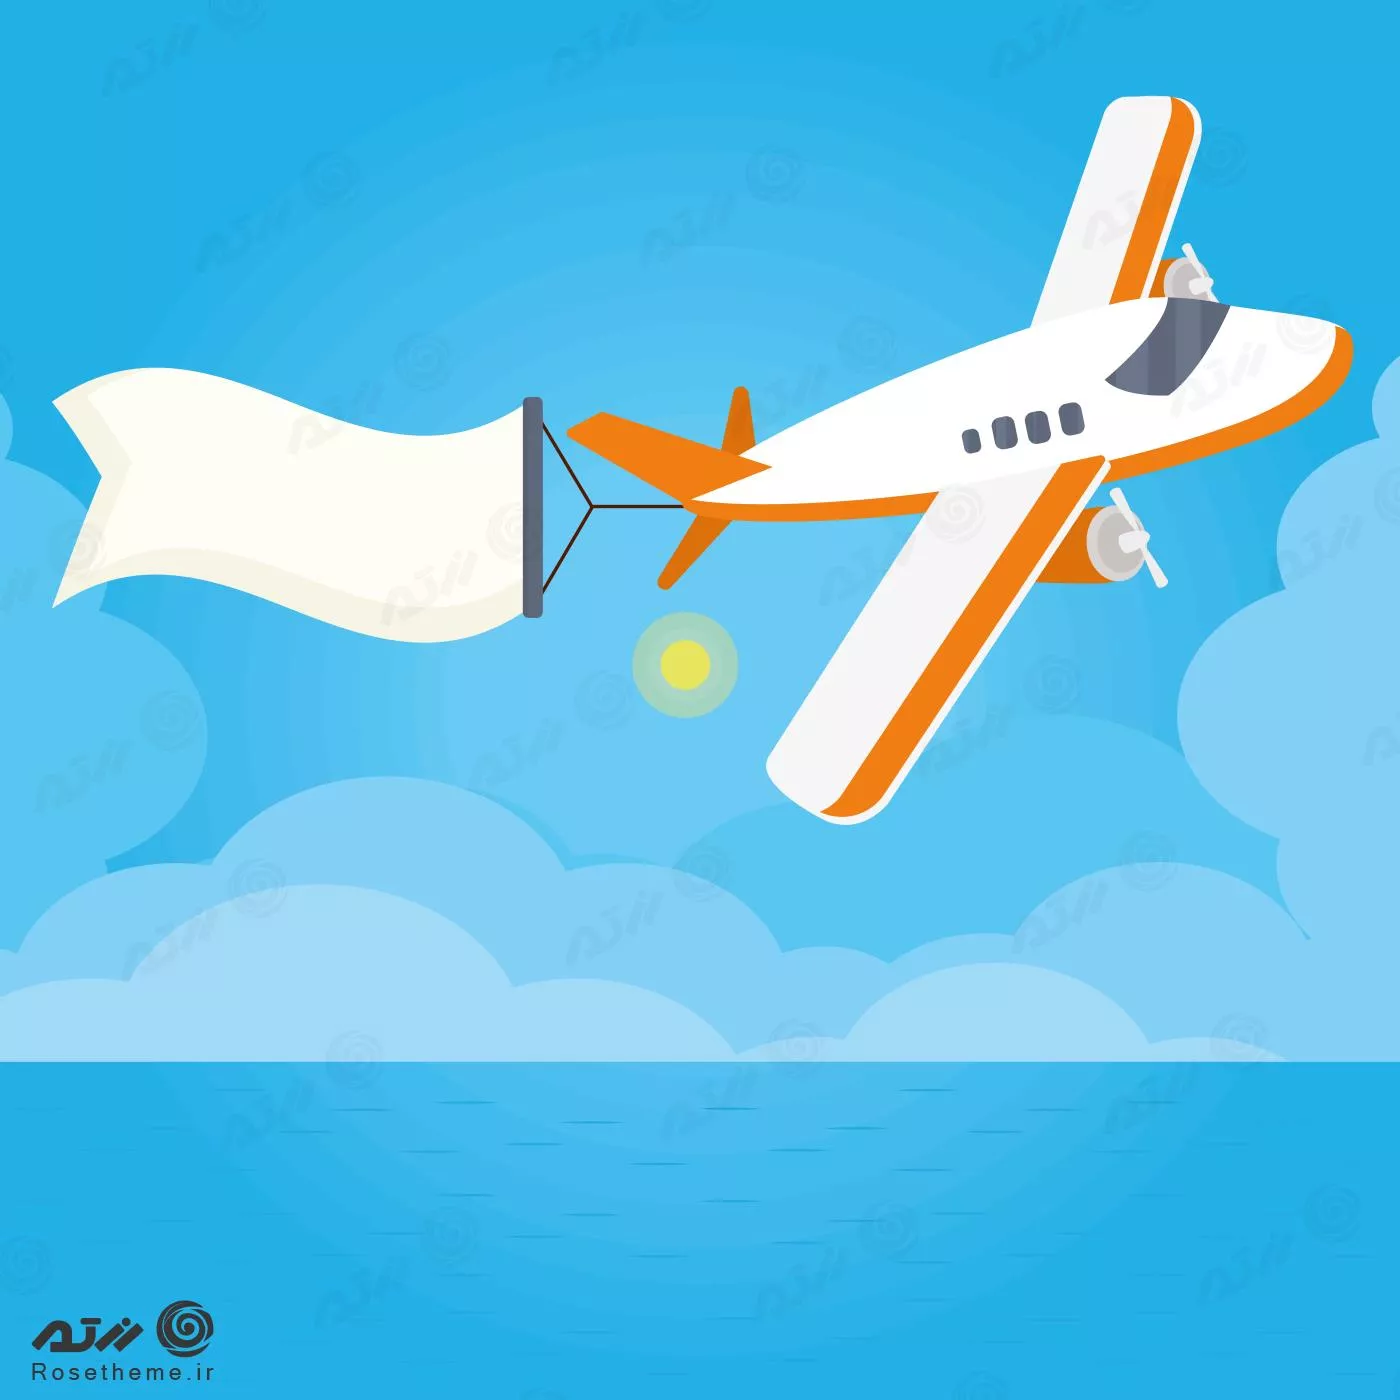 وکتور EPS لایه باز طرح گرافیکی هواپیما سفید و نارنجی در آسمان 22013